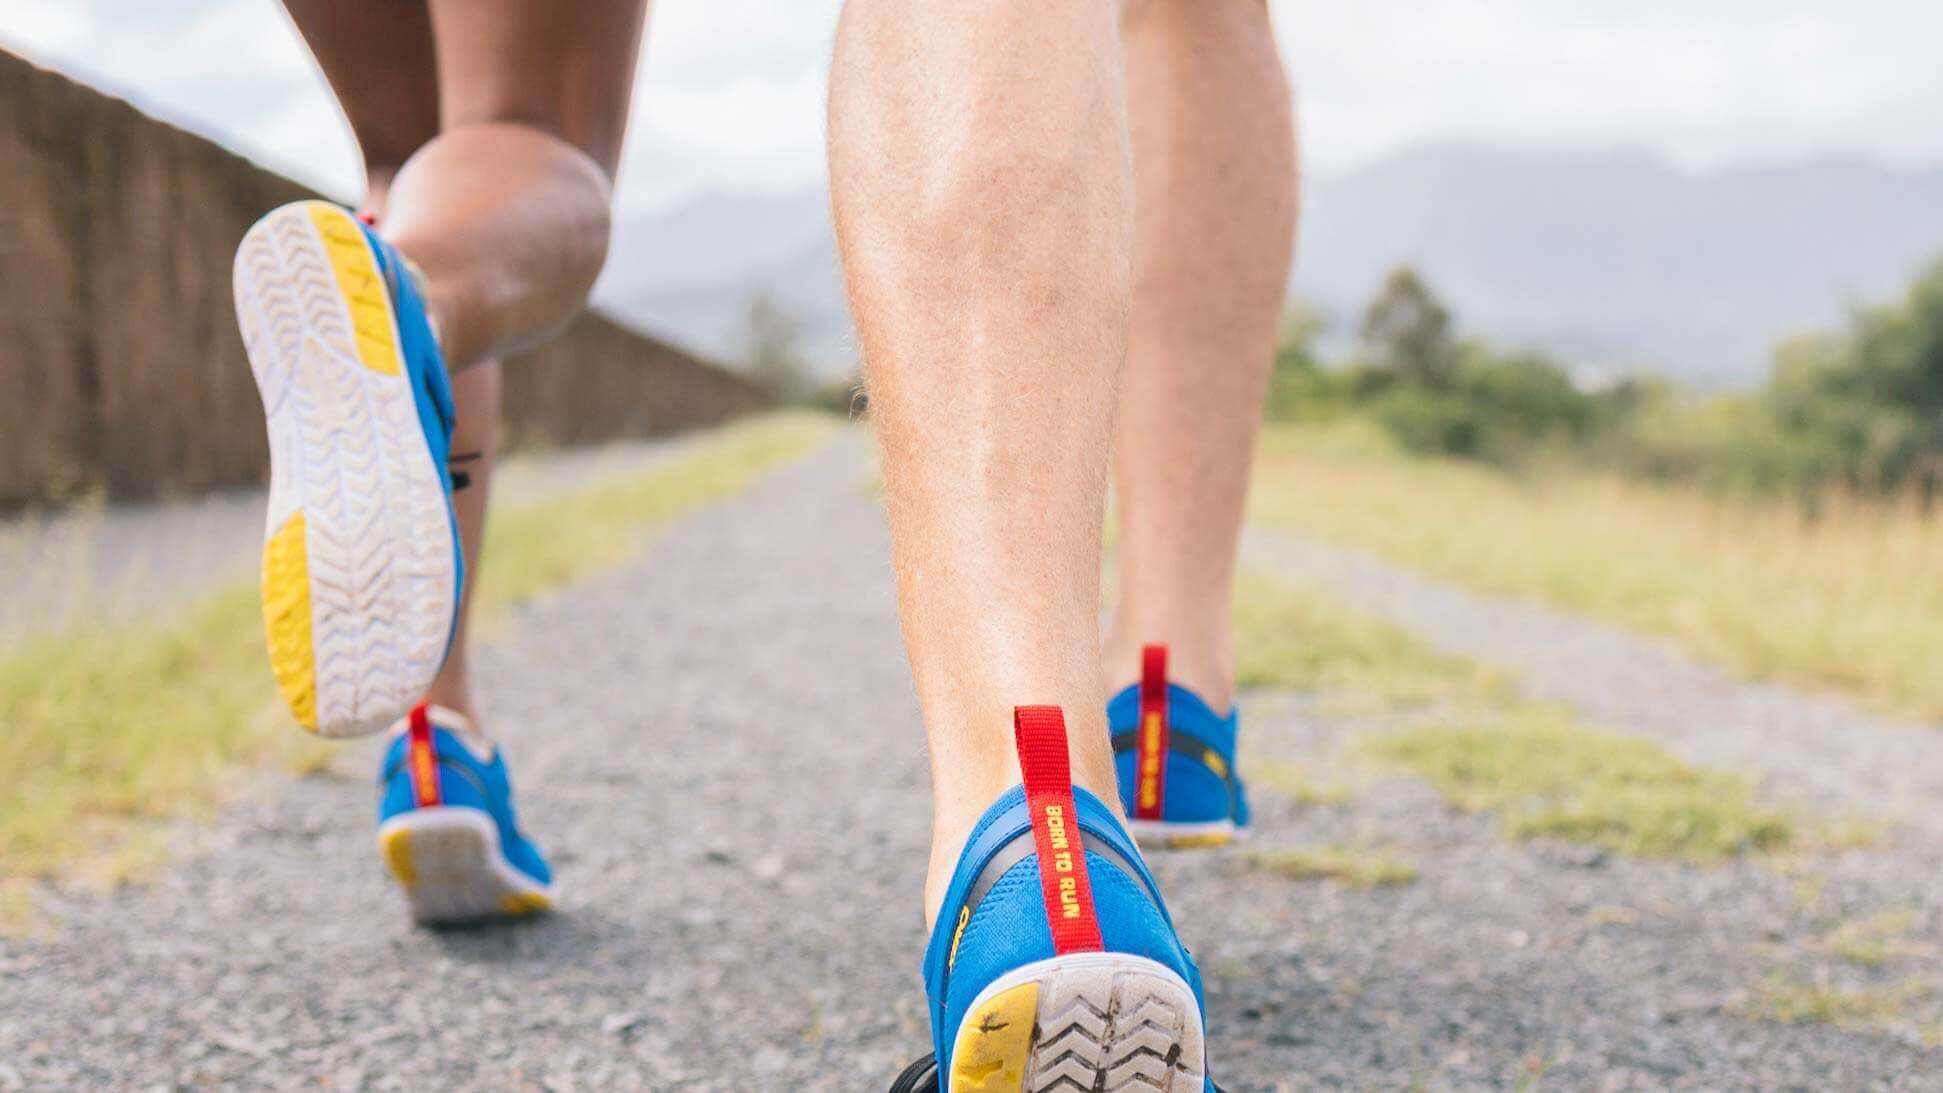 Barefoot marathoning: A healthier way to run?